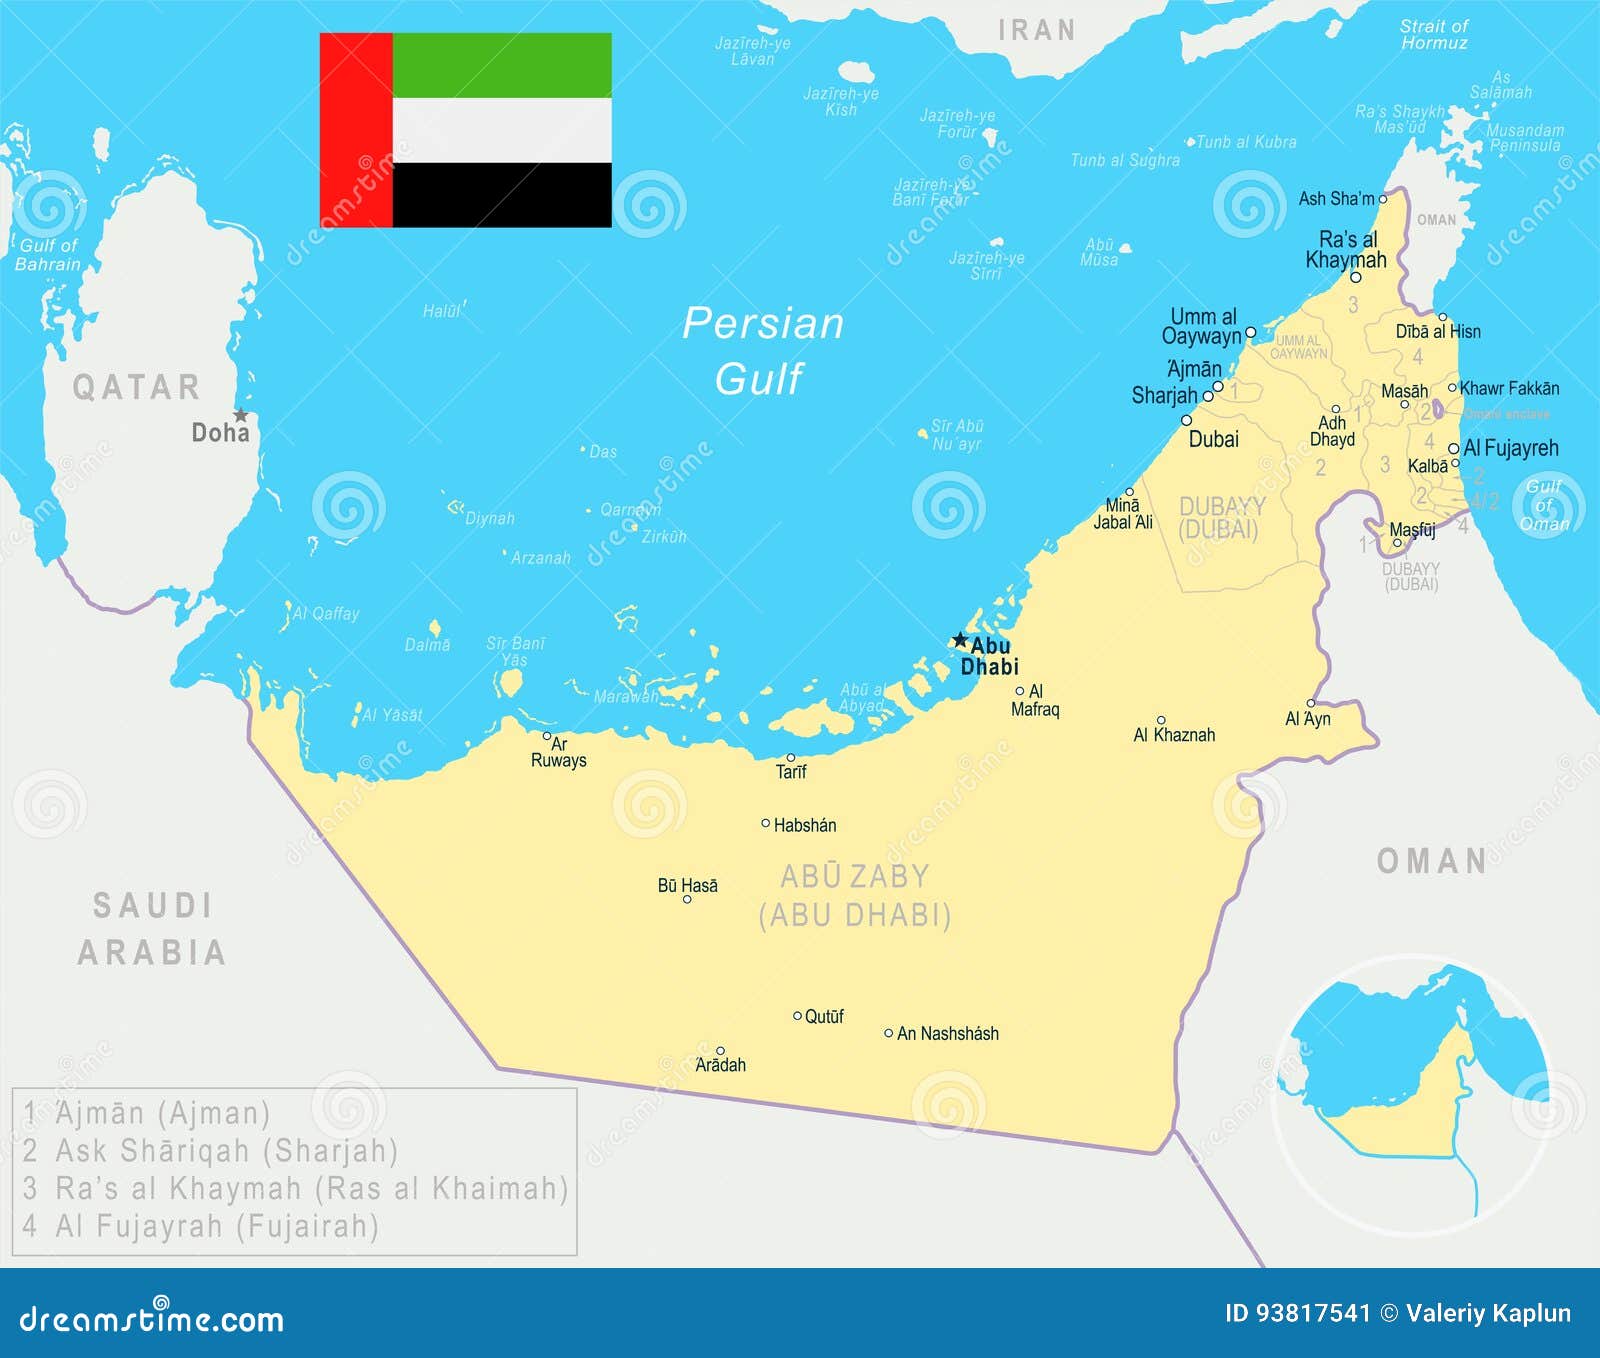 Объединенные арабские эмираты флаг карта. Объединённые арабские эмираты на карте. Карта ОАЭ С Эмиратами.